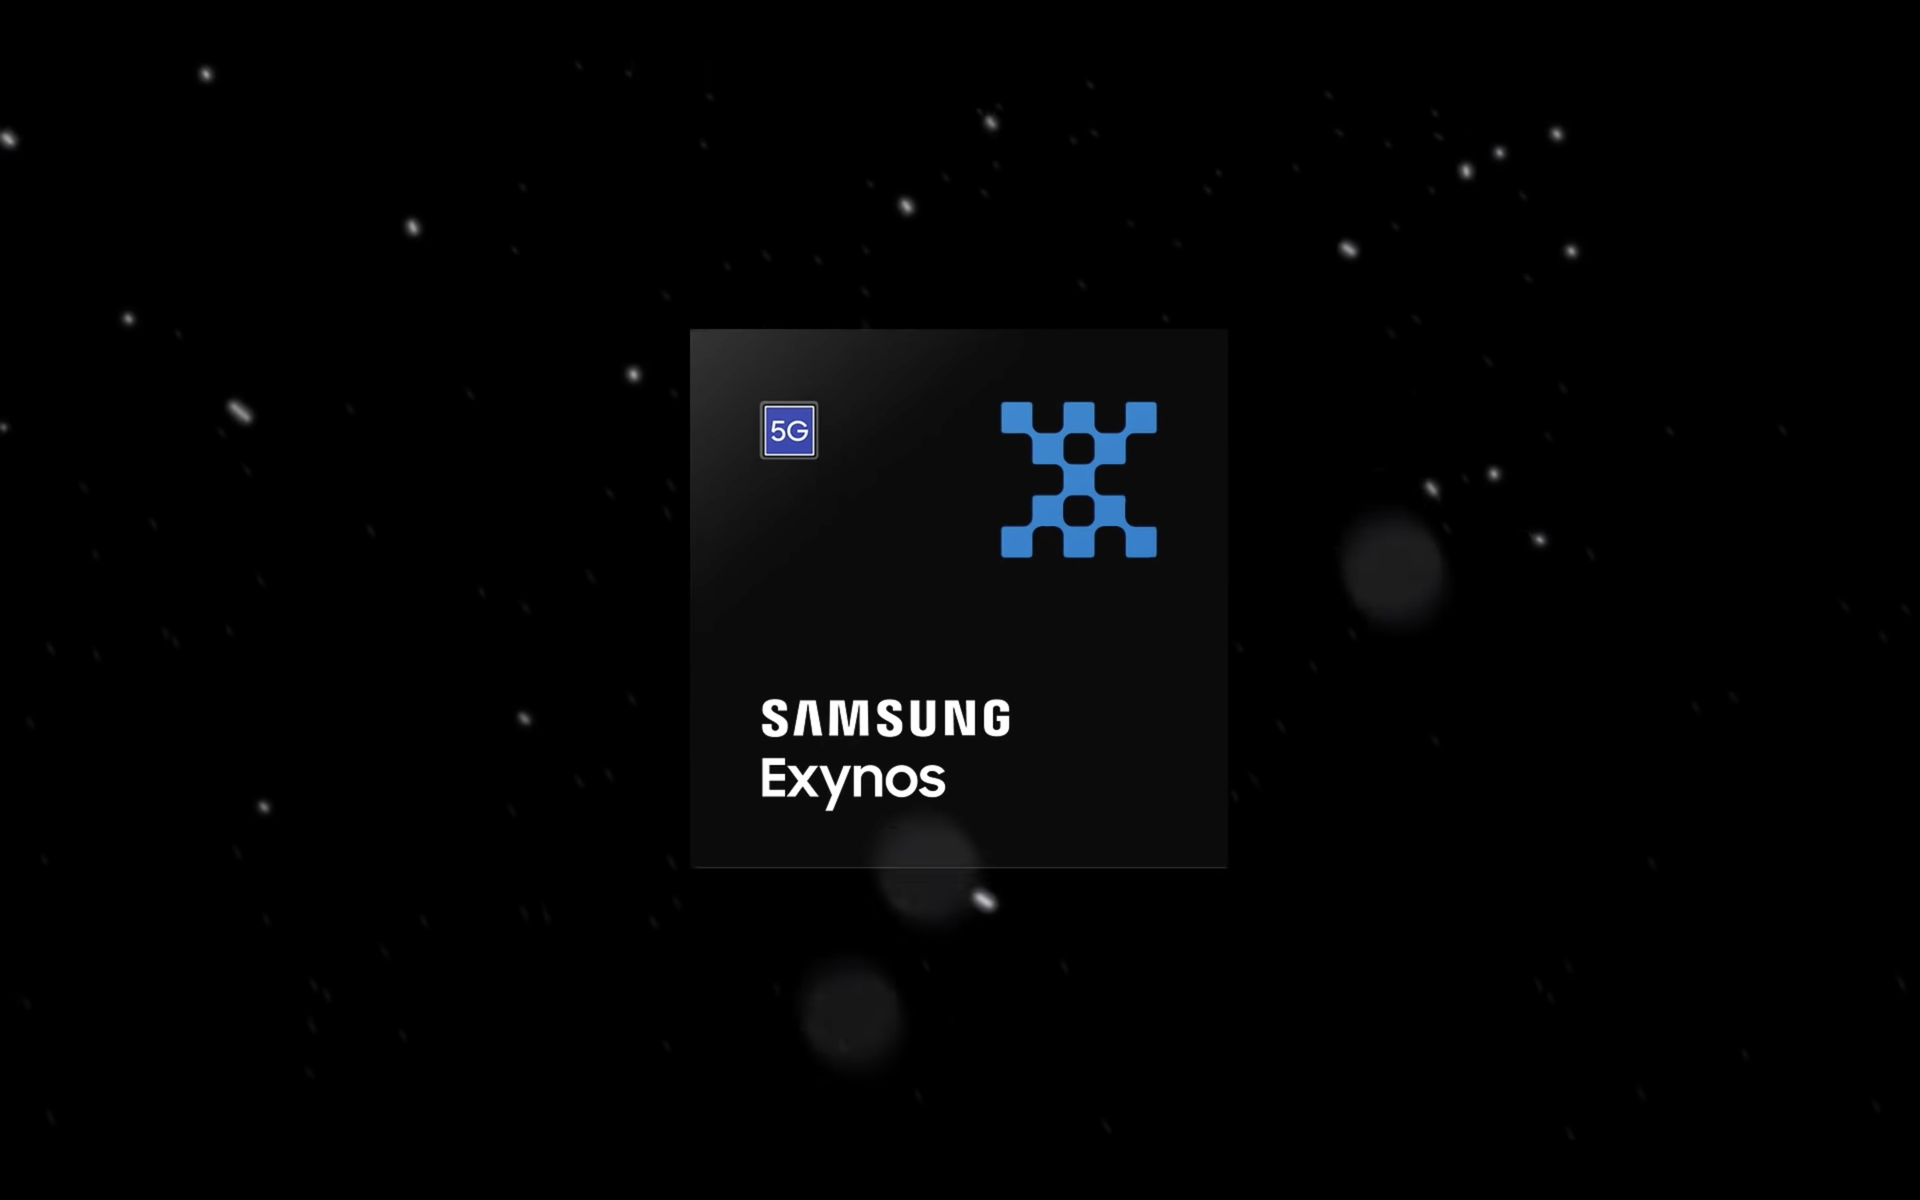 Samsung ha posticipato l'uscita di Exynos 2200, il flagship Galaxy S22 entrerà nel mercato con un chip Snapdragon 8 Gen 1